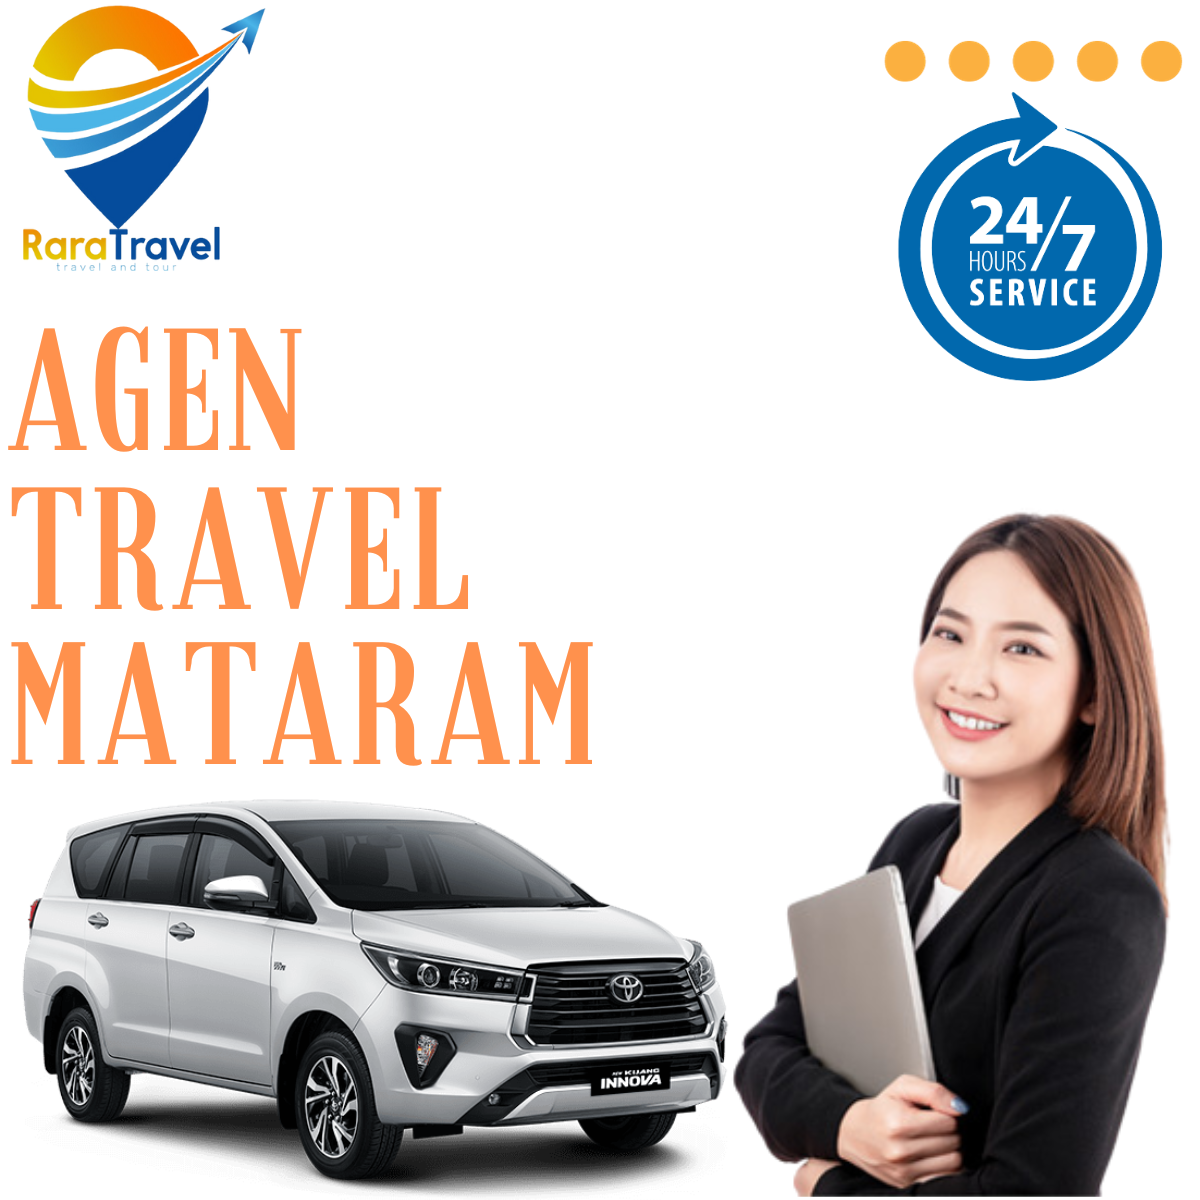 Agen Travel Mataram ke Berbagai Kota Door to Door Murah 24 Jam